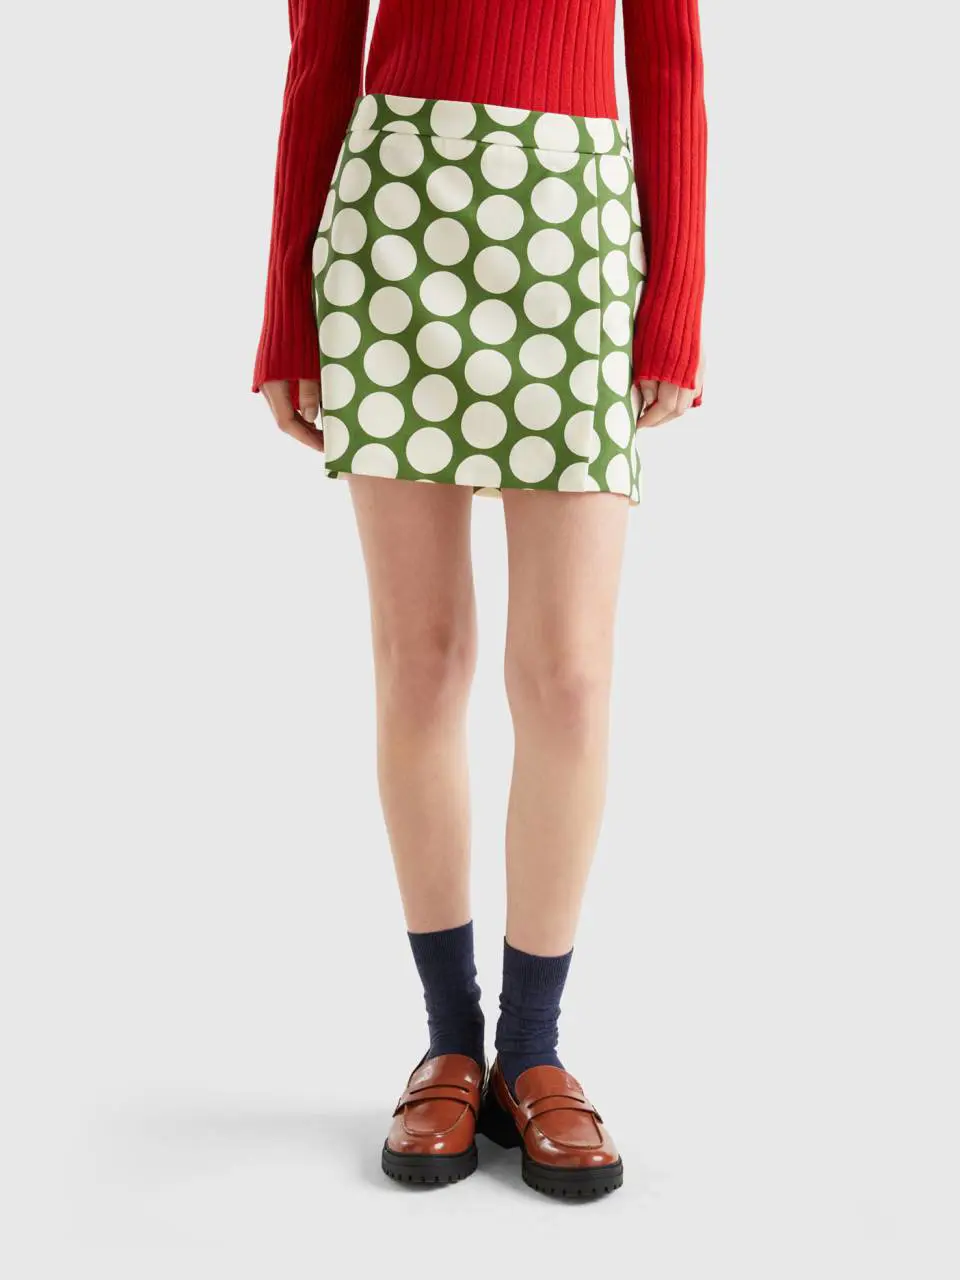 Benetton polka dot mini skirt. 1